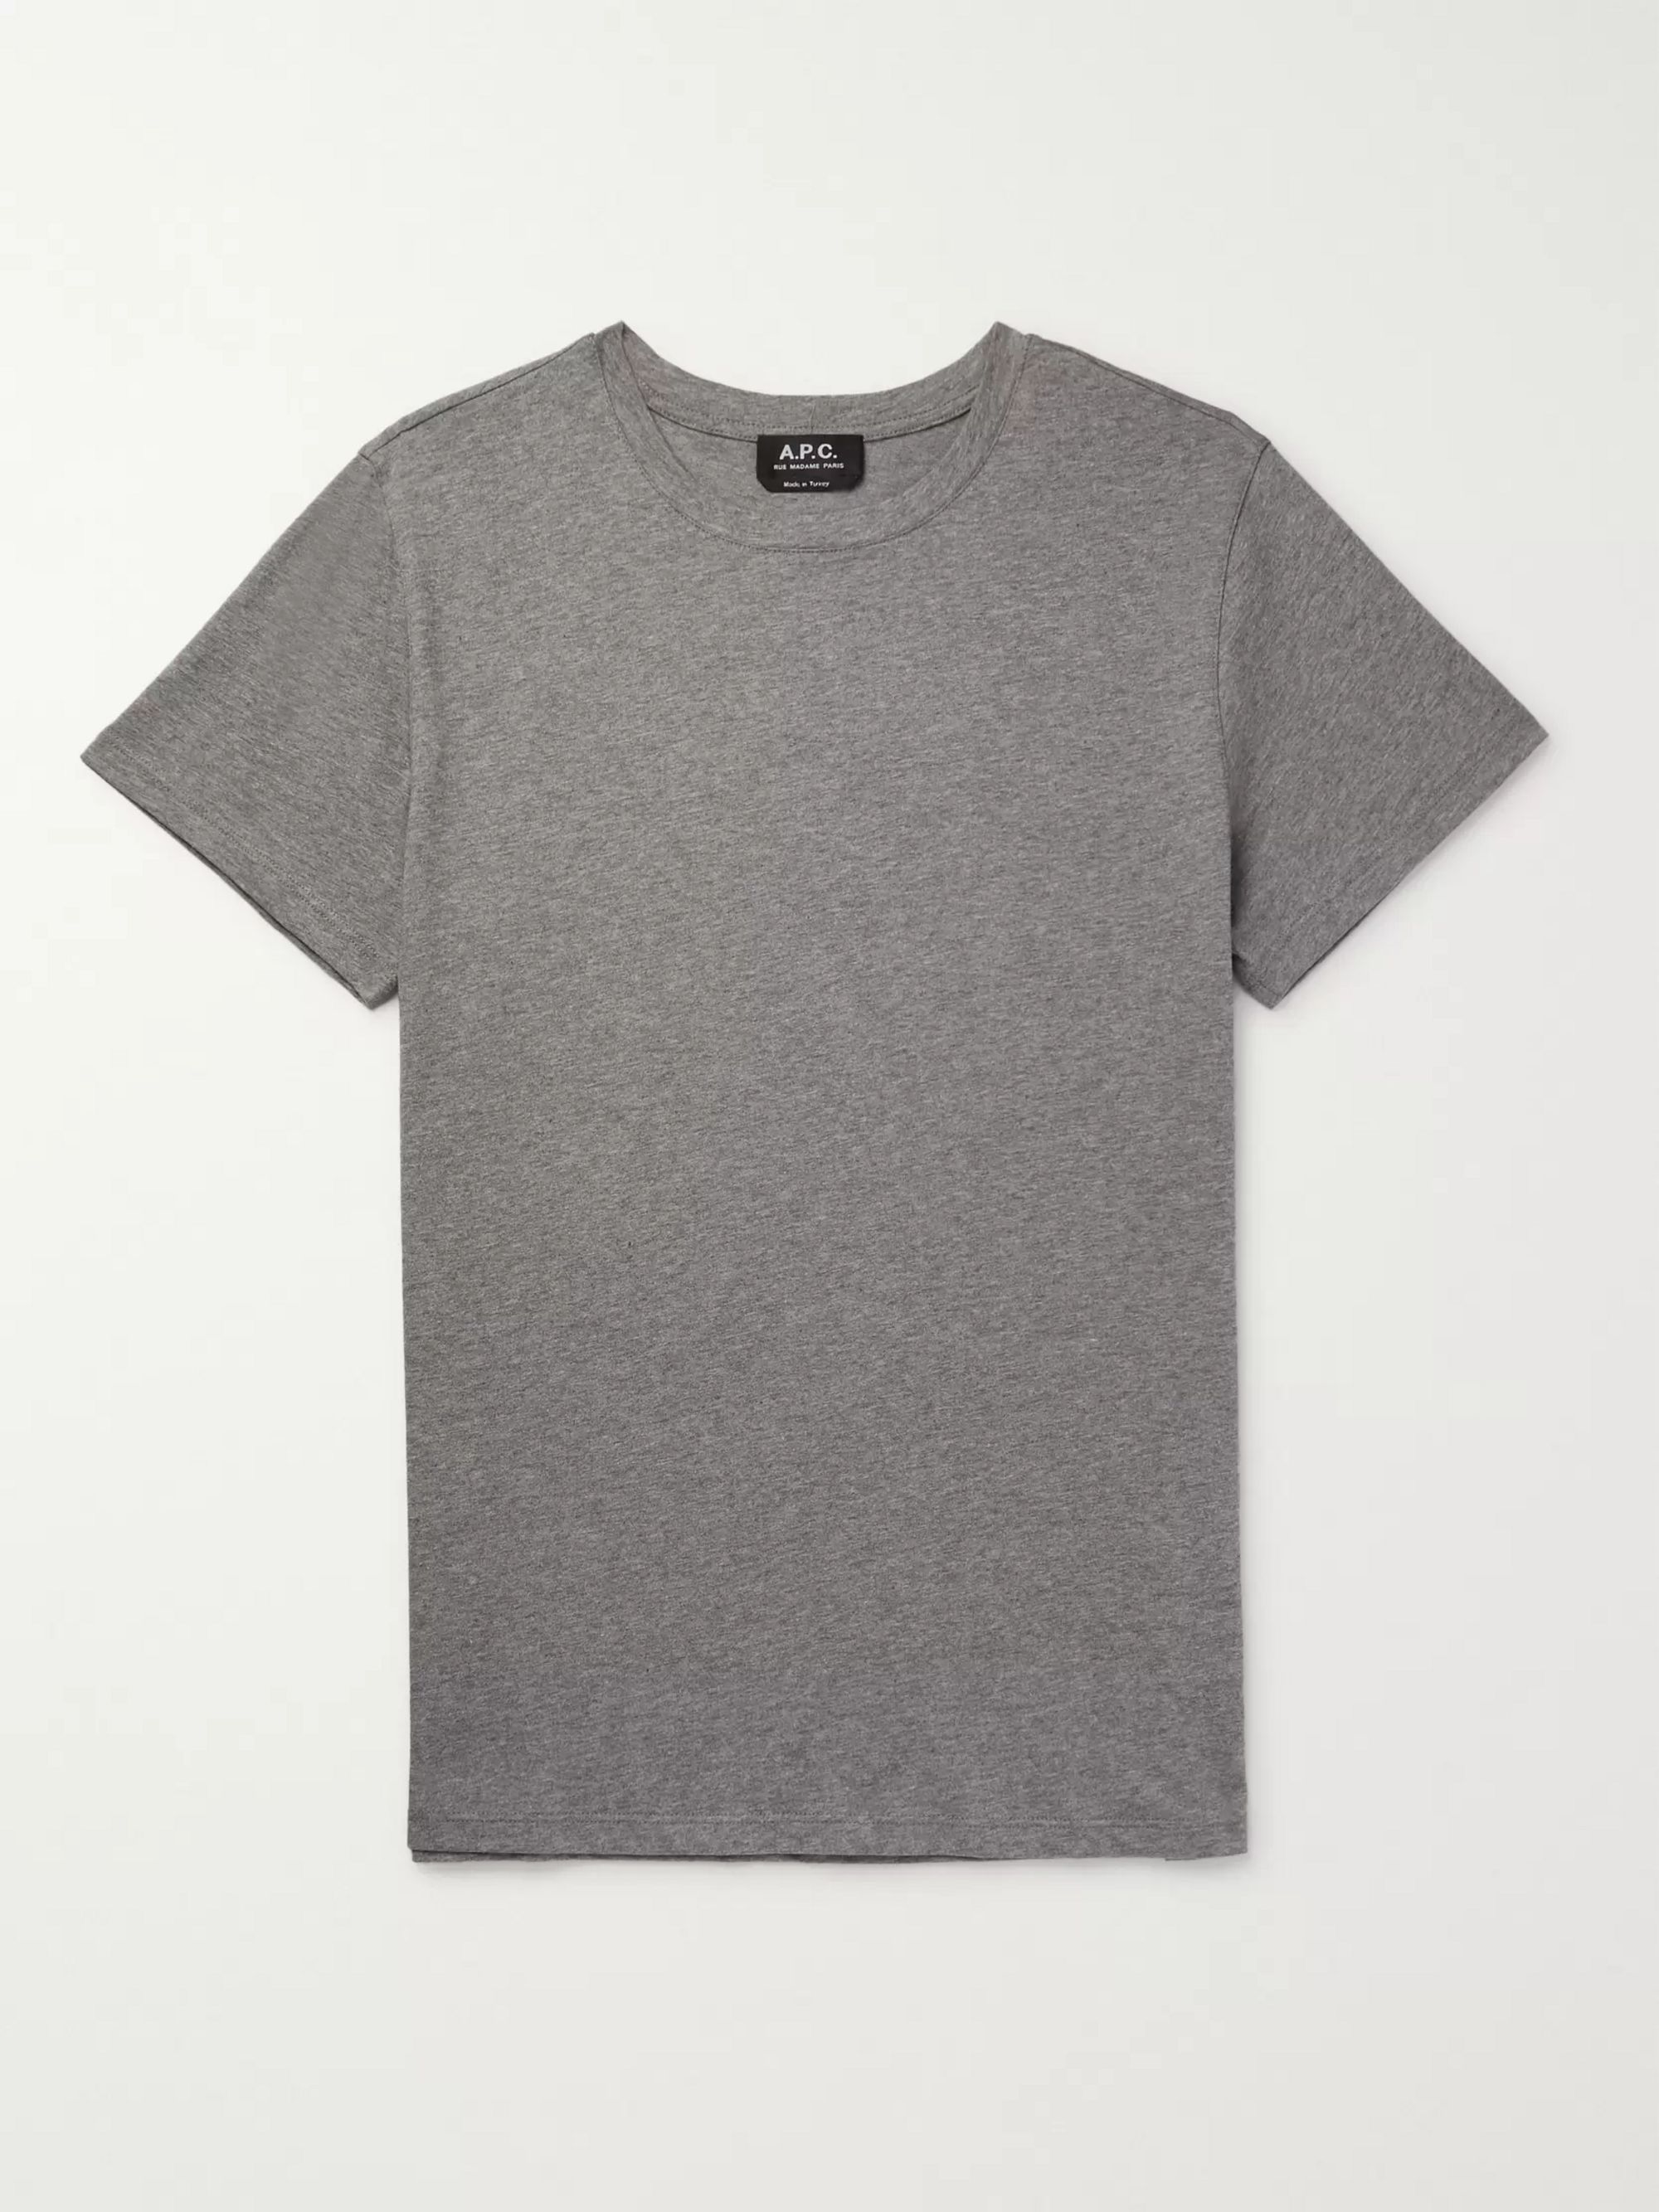 grey jersey t shirt